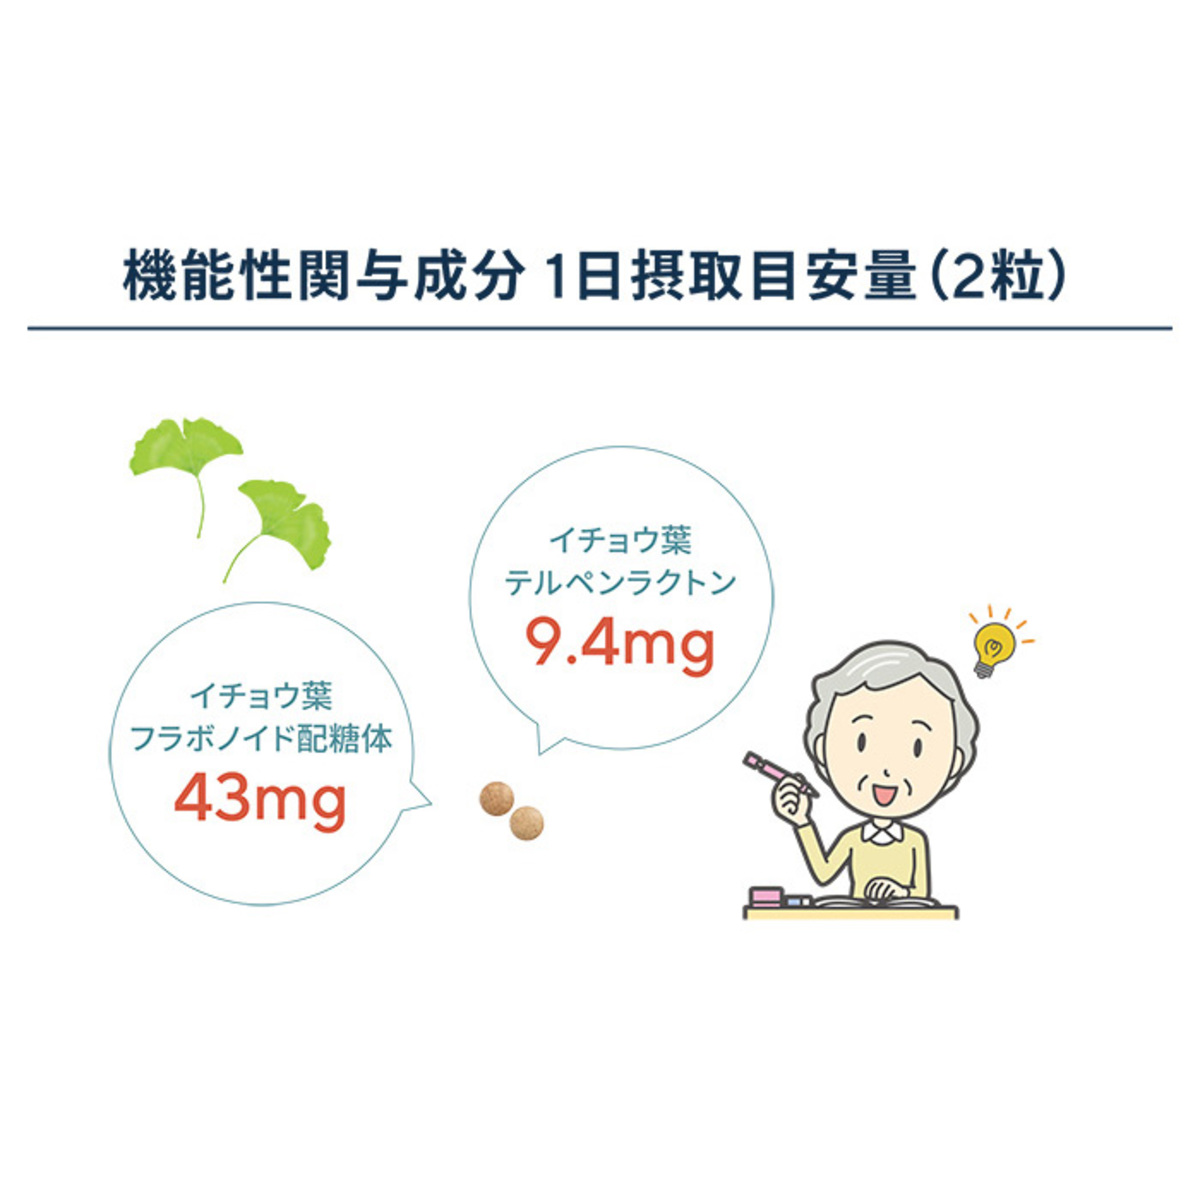 サプリ生活プレミアム「イチョウ葉＋」機能性表示食品 - QVC.jp